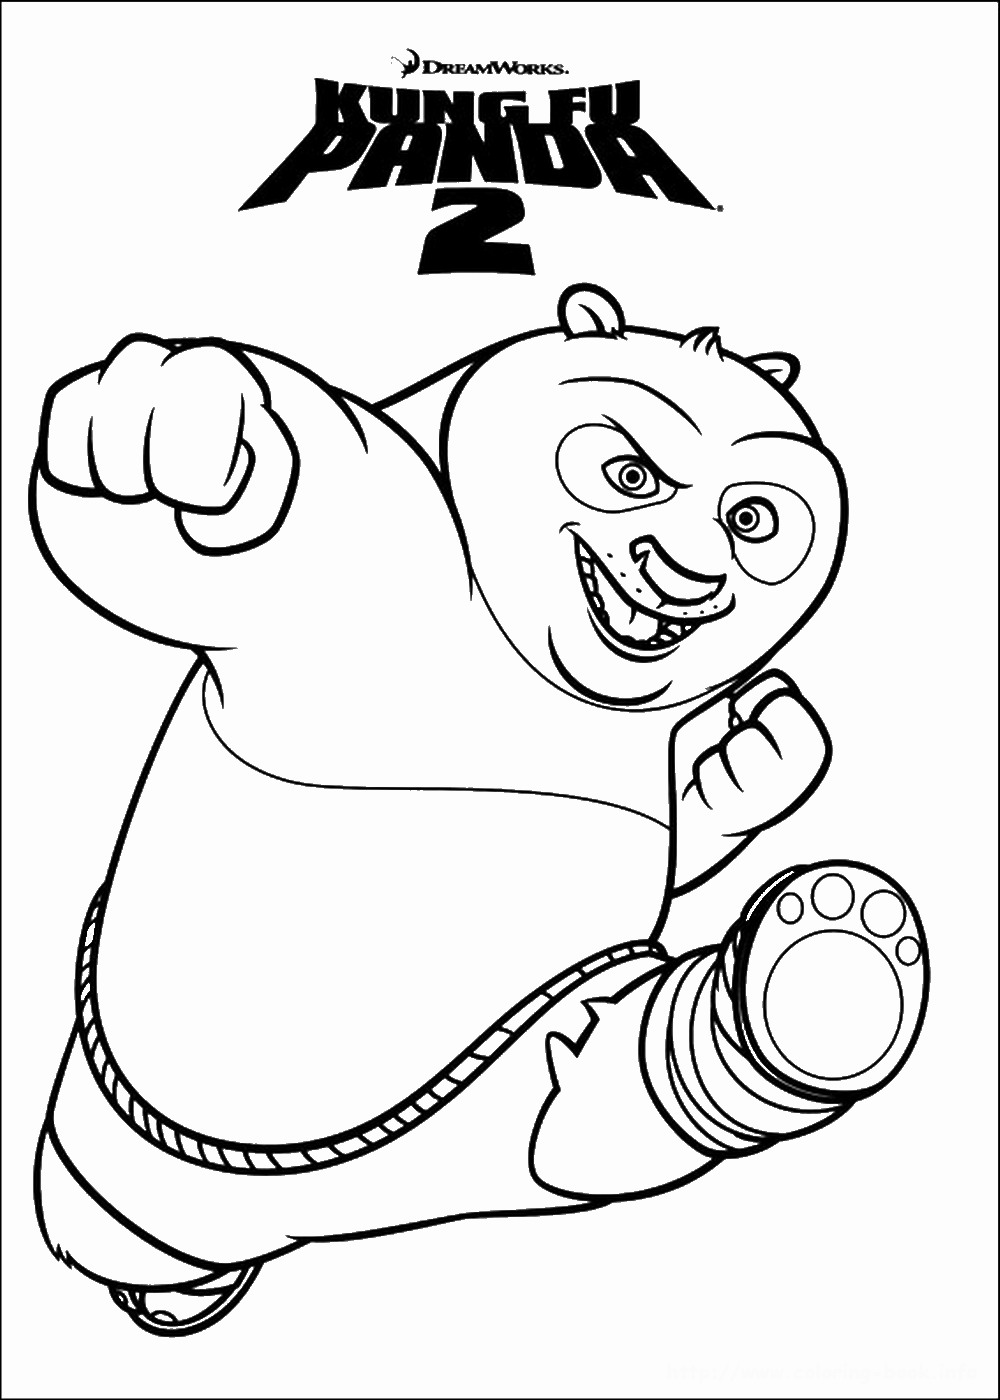 Панда кунг фу раскраска для детей